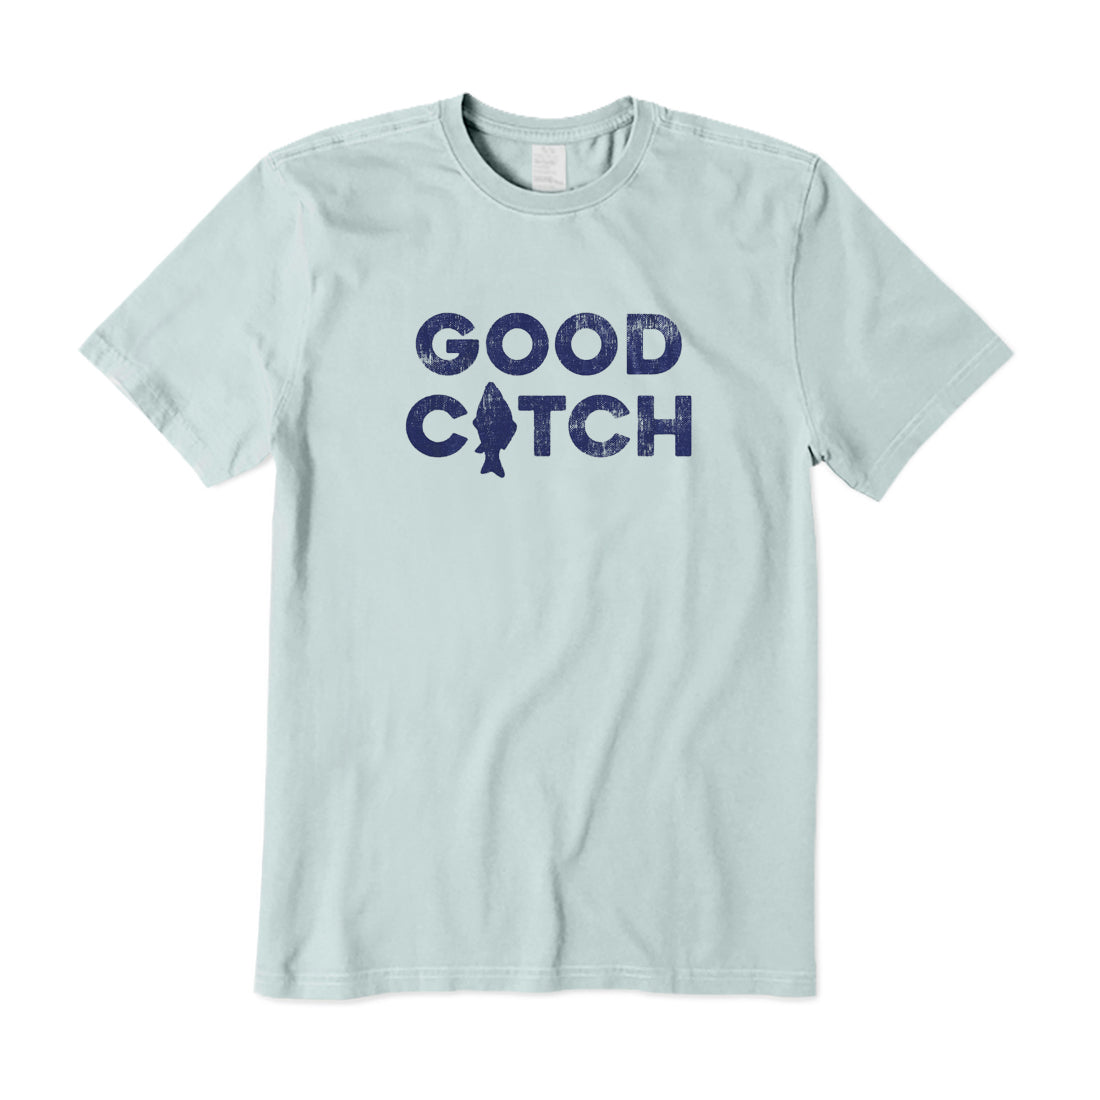 Good Catch T-Shirt